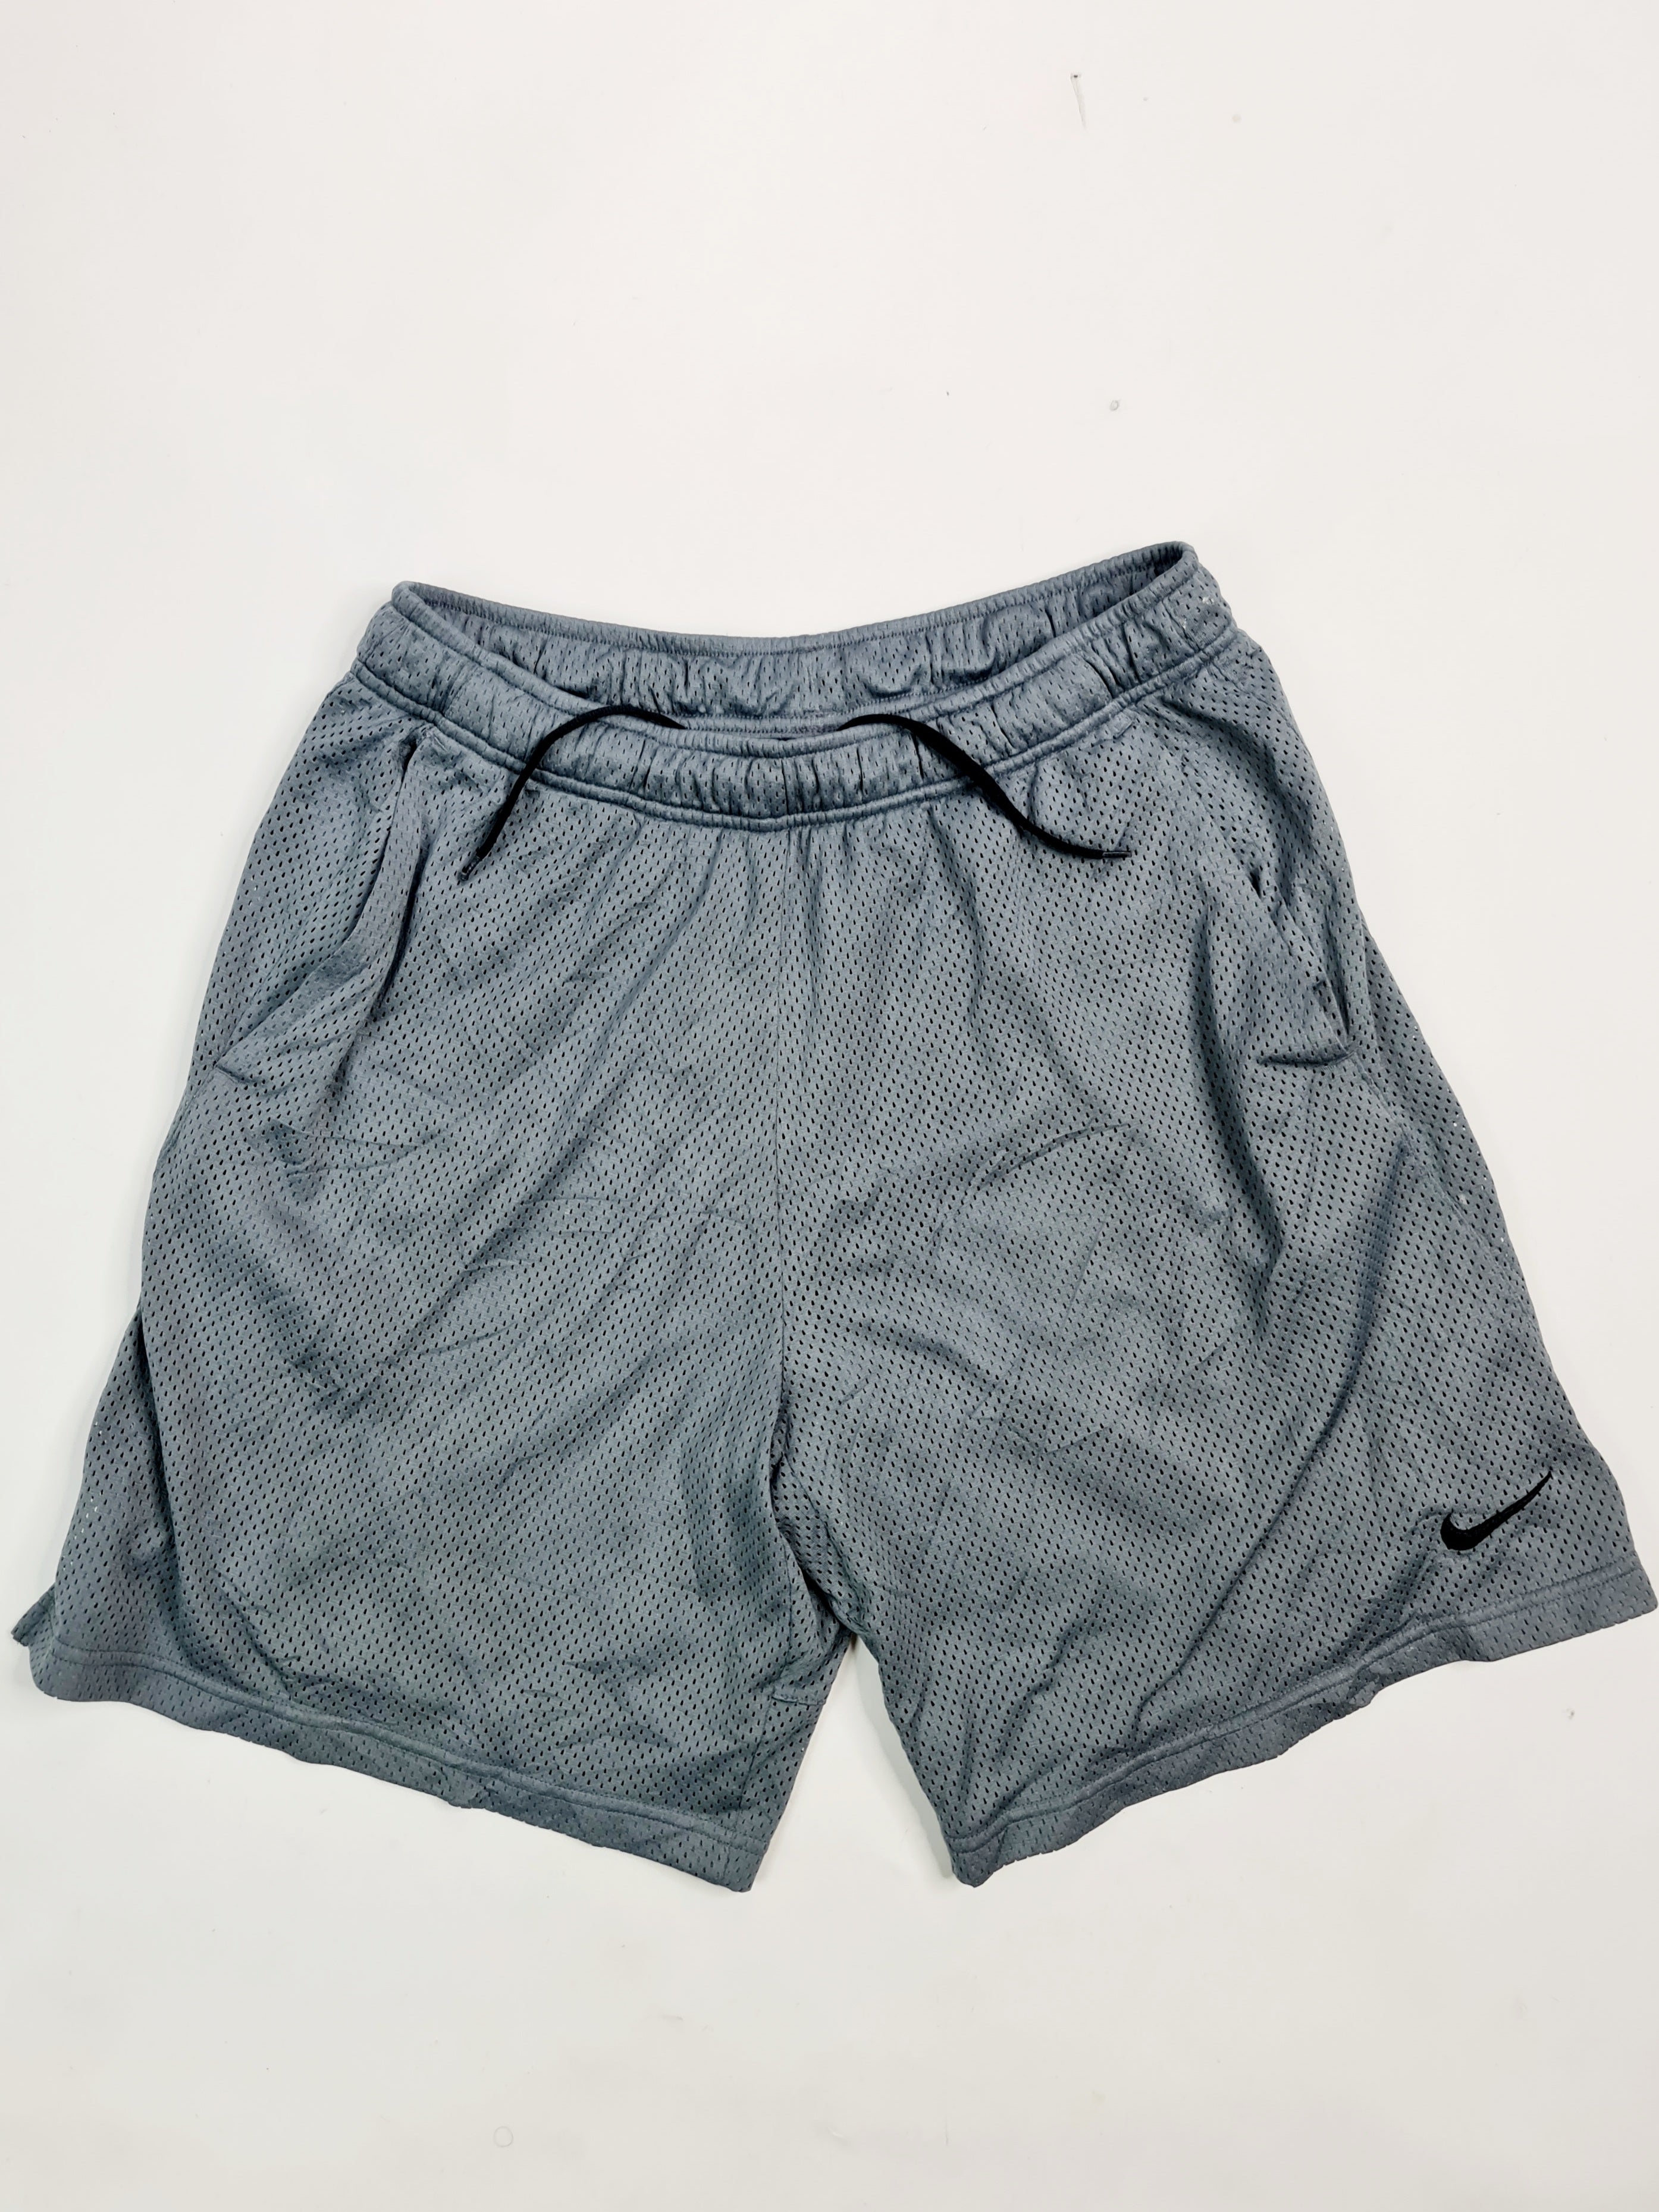 Short deportivo hombre marca Nike - (Talla: L/G) Gris